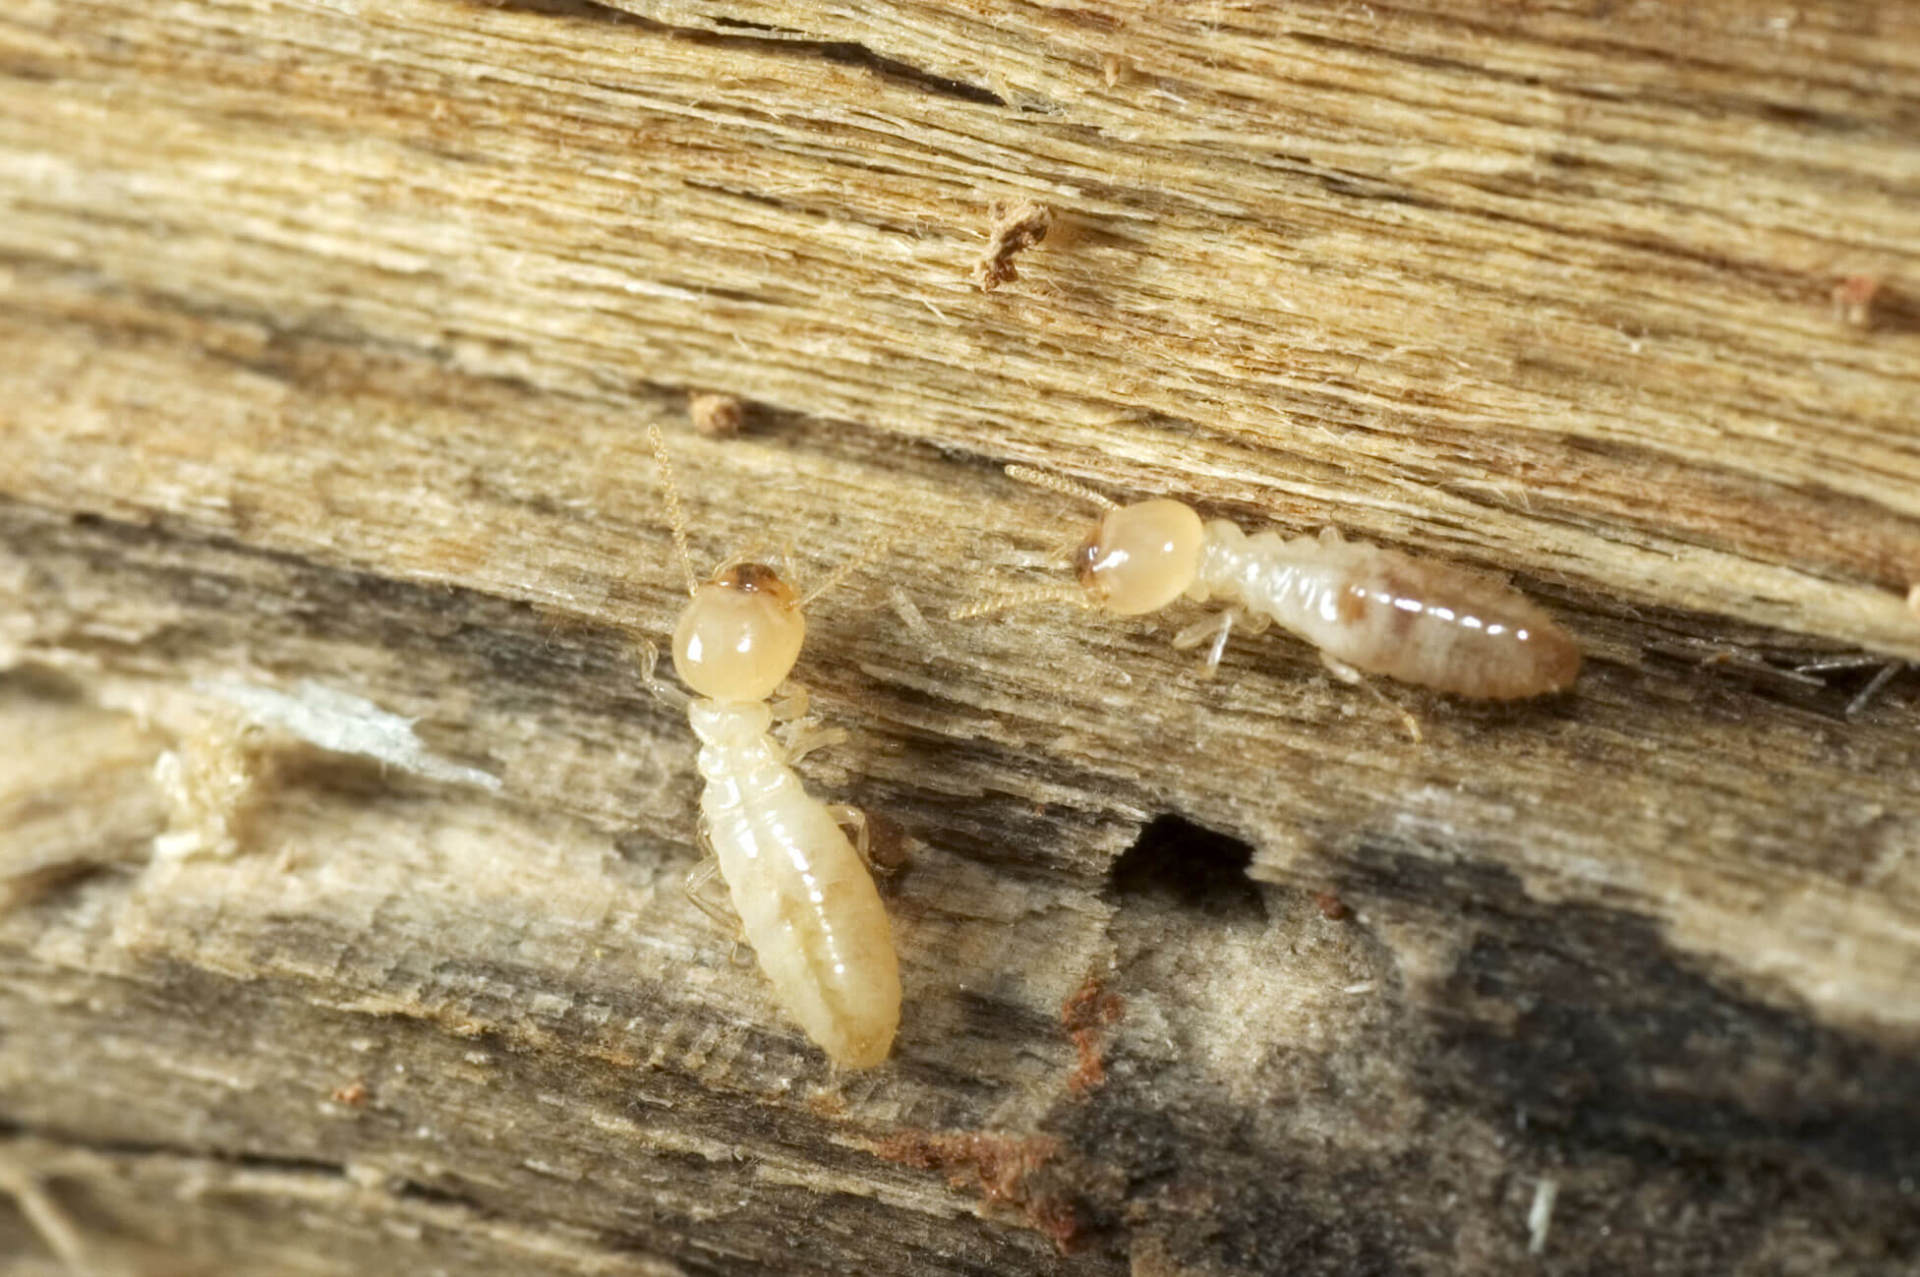 subterranean termite pest control